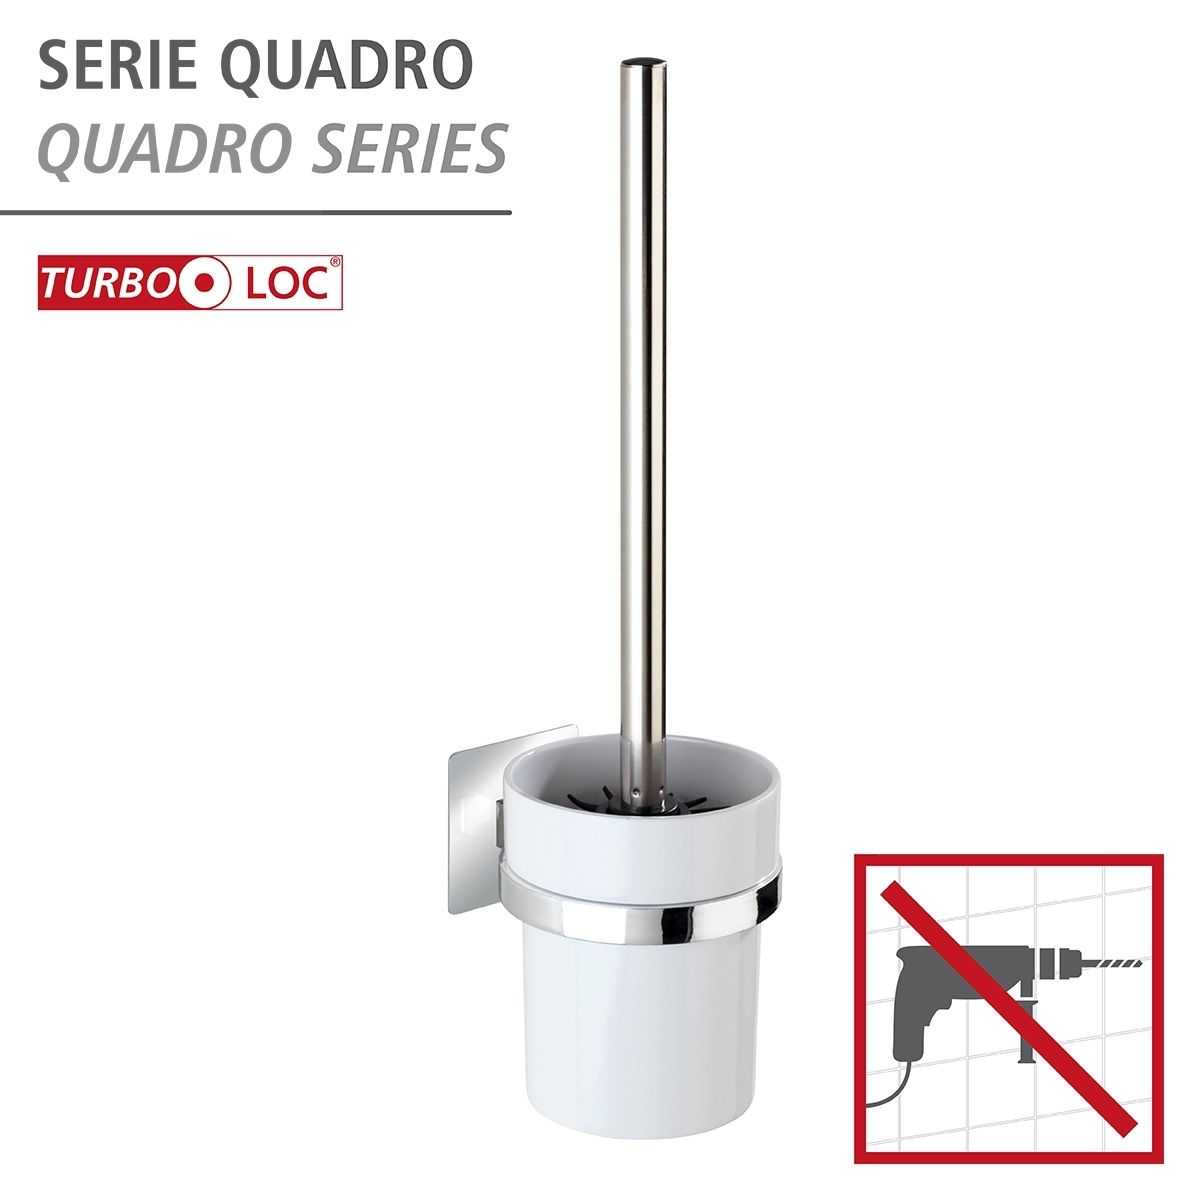 WENKO Turbo-Loc WC-Garnitur Quadro, Spezial-Klebepad für einfache Montage  ohne bohren | WC-Bürsten & Garnituren | Badaccessoires | Bad & Sanitär |  markenbaumarkt24